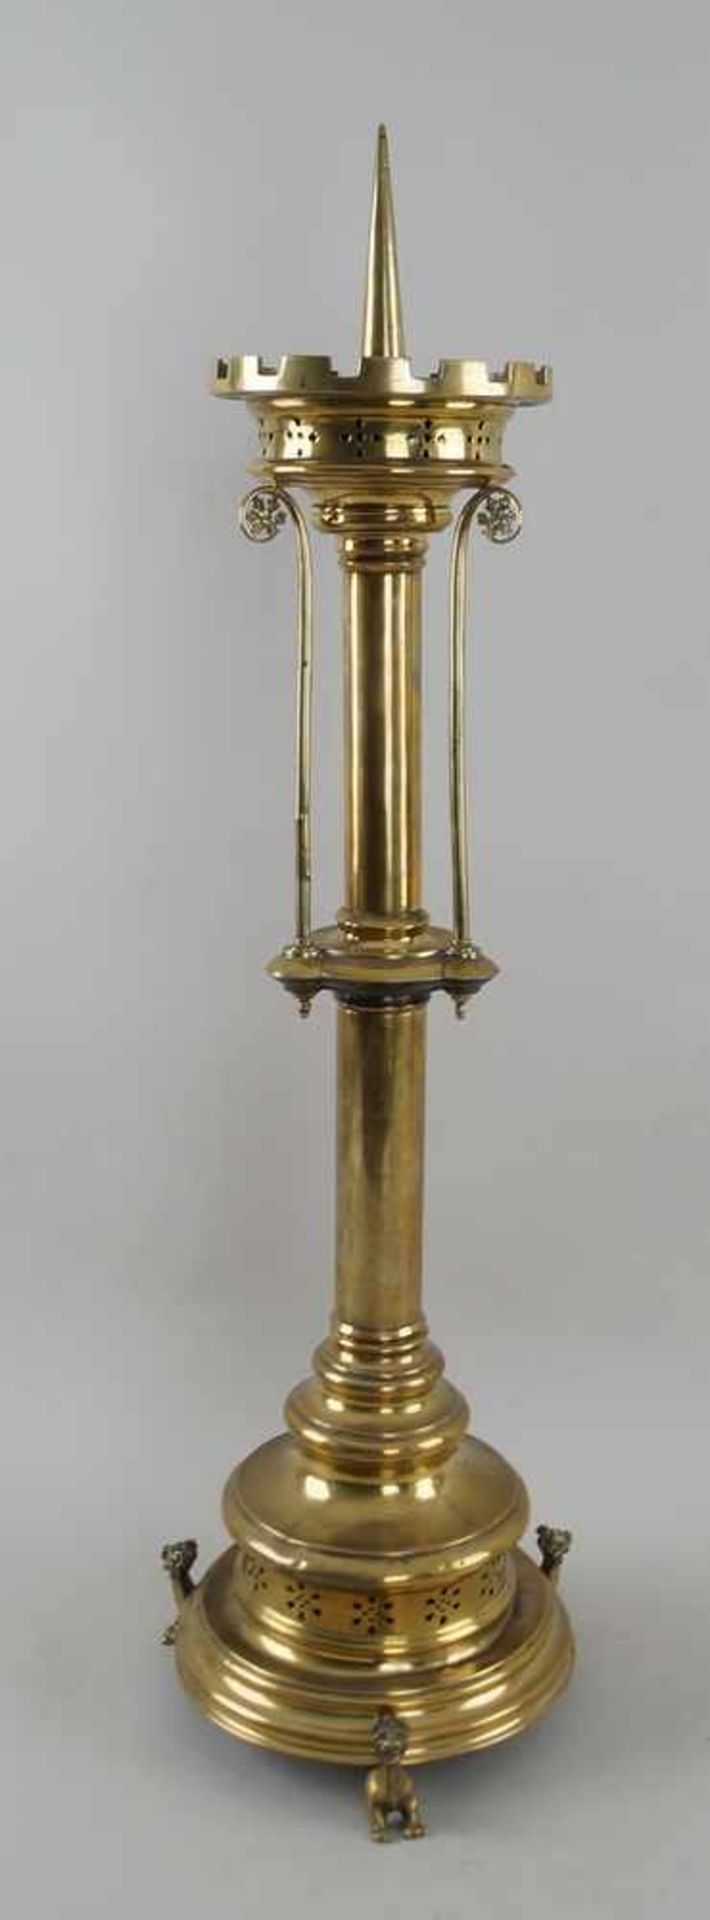 Imposanter neugotischer Leuchter, Messing, 19. JH, H 84 cm - Bild 3 aus 6